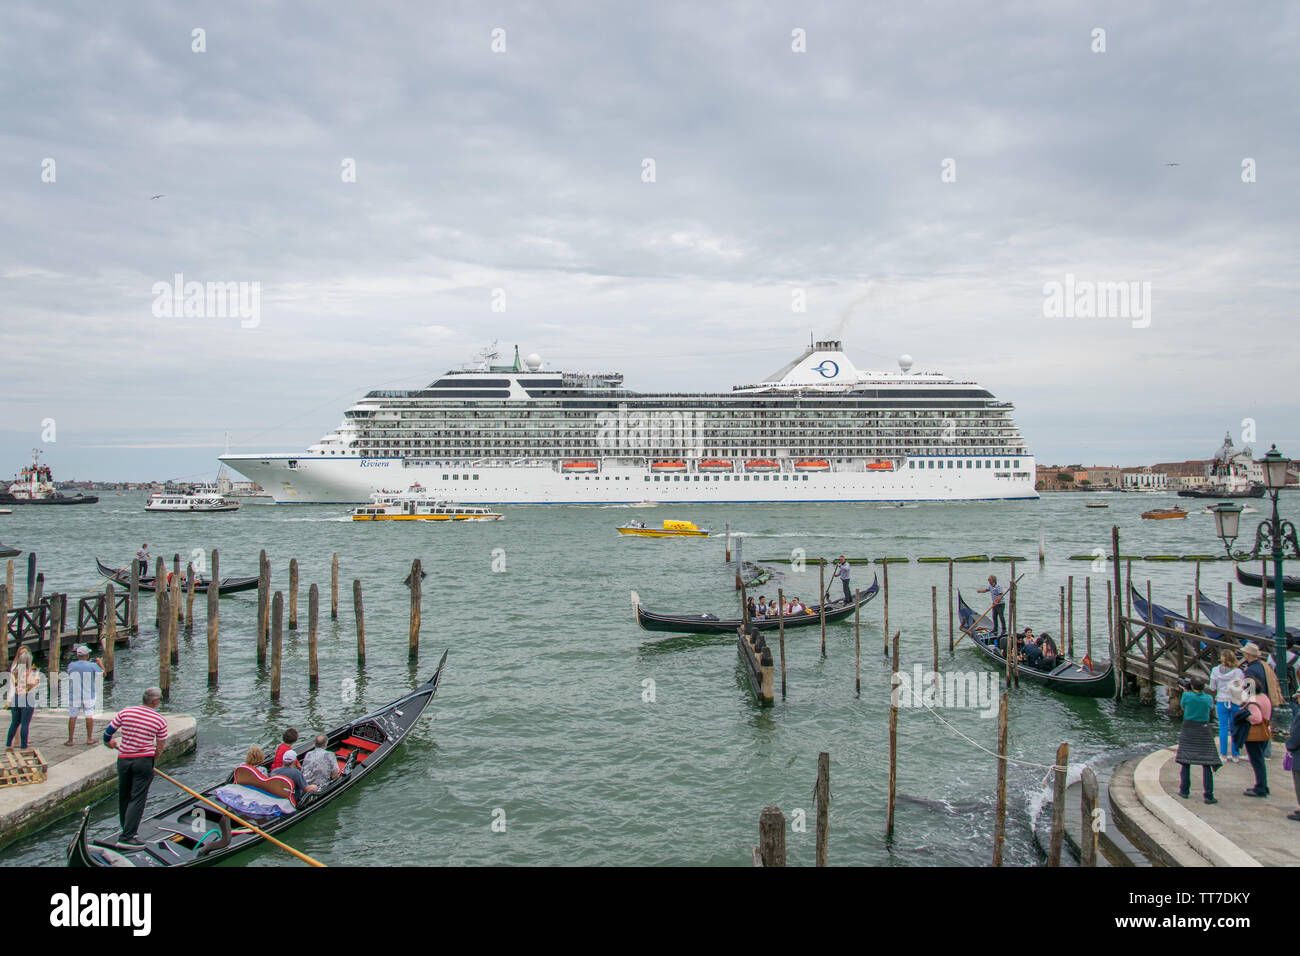 Italie, Vénétie, Venise - MSC Croisières Riviera quitter Venise à Bacino San Marco, bloquant la vue magnifique de San Giorgio Maggiore (26 mai 2019) Banque D'Images